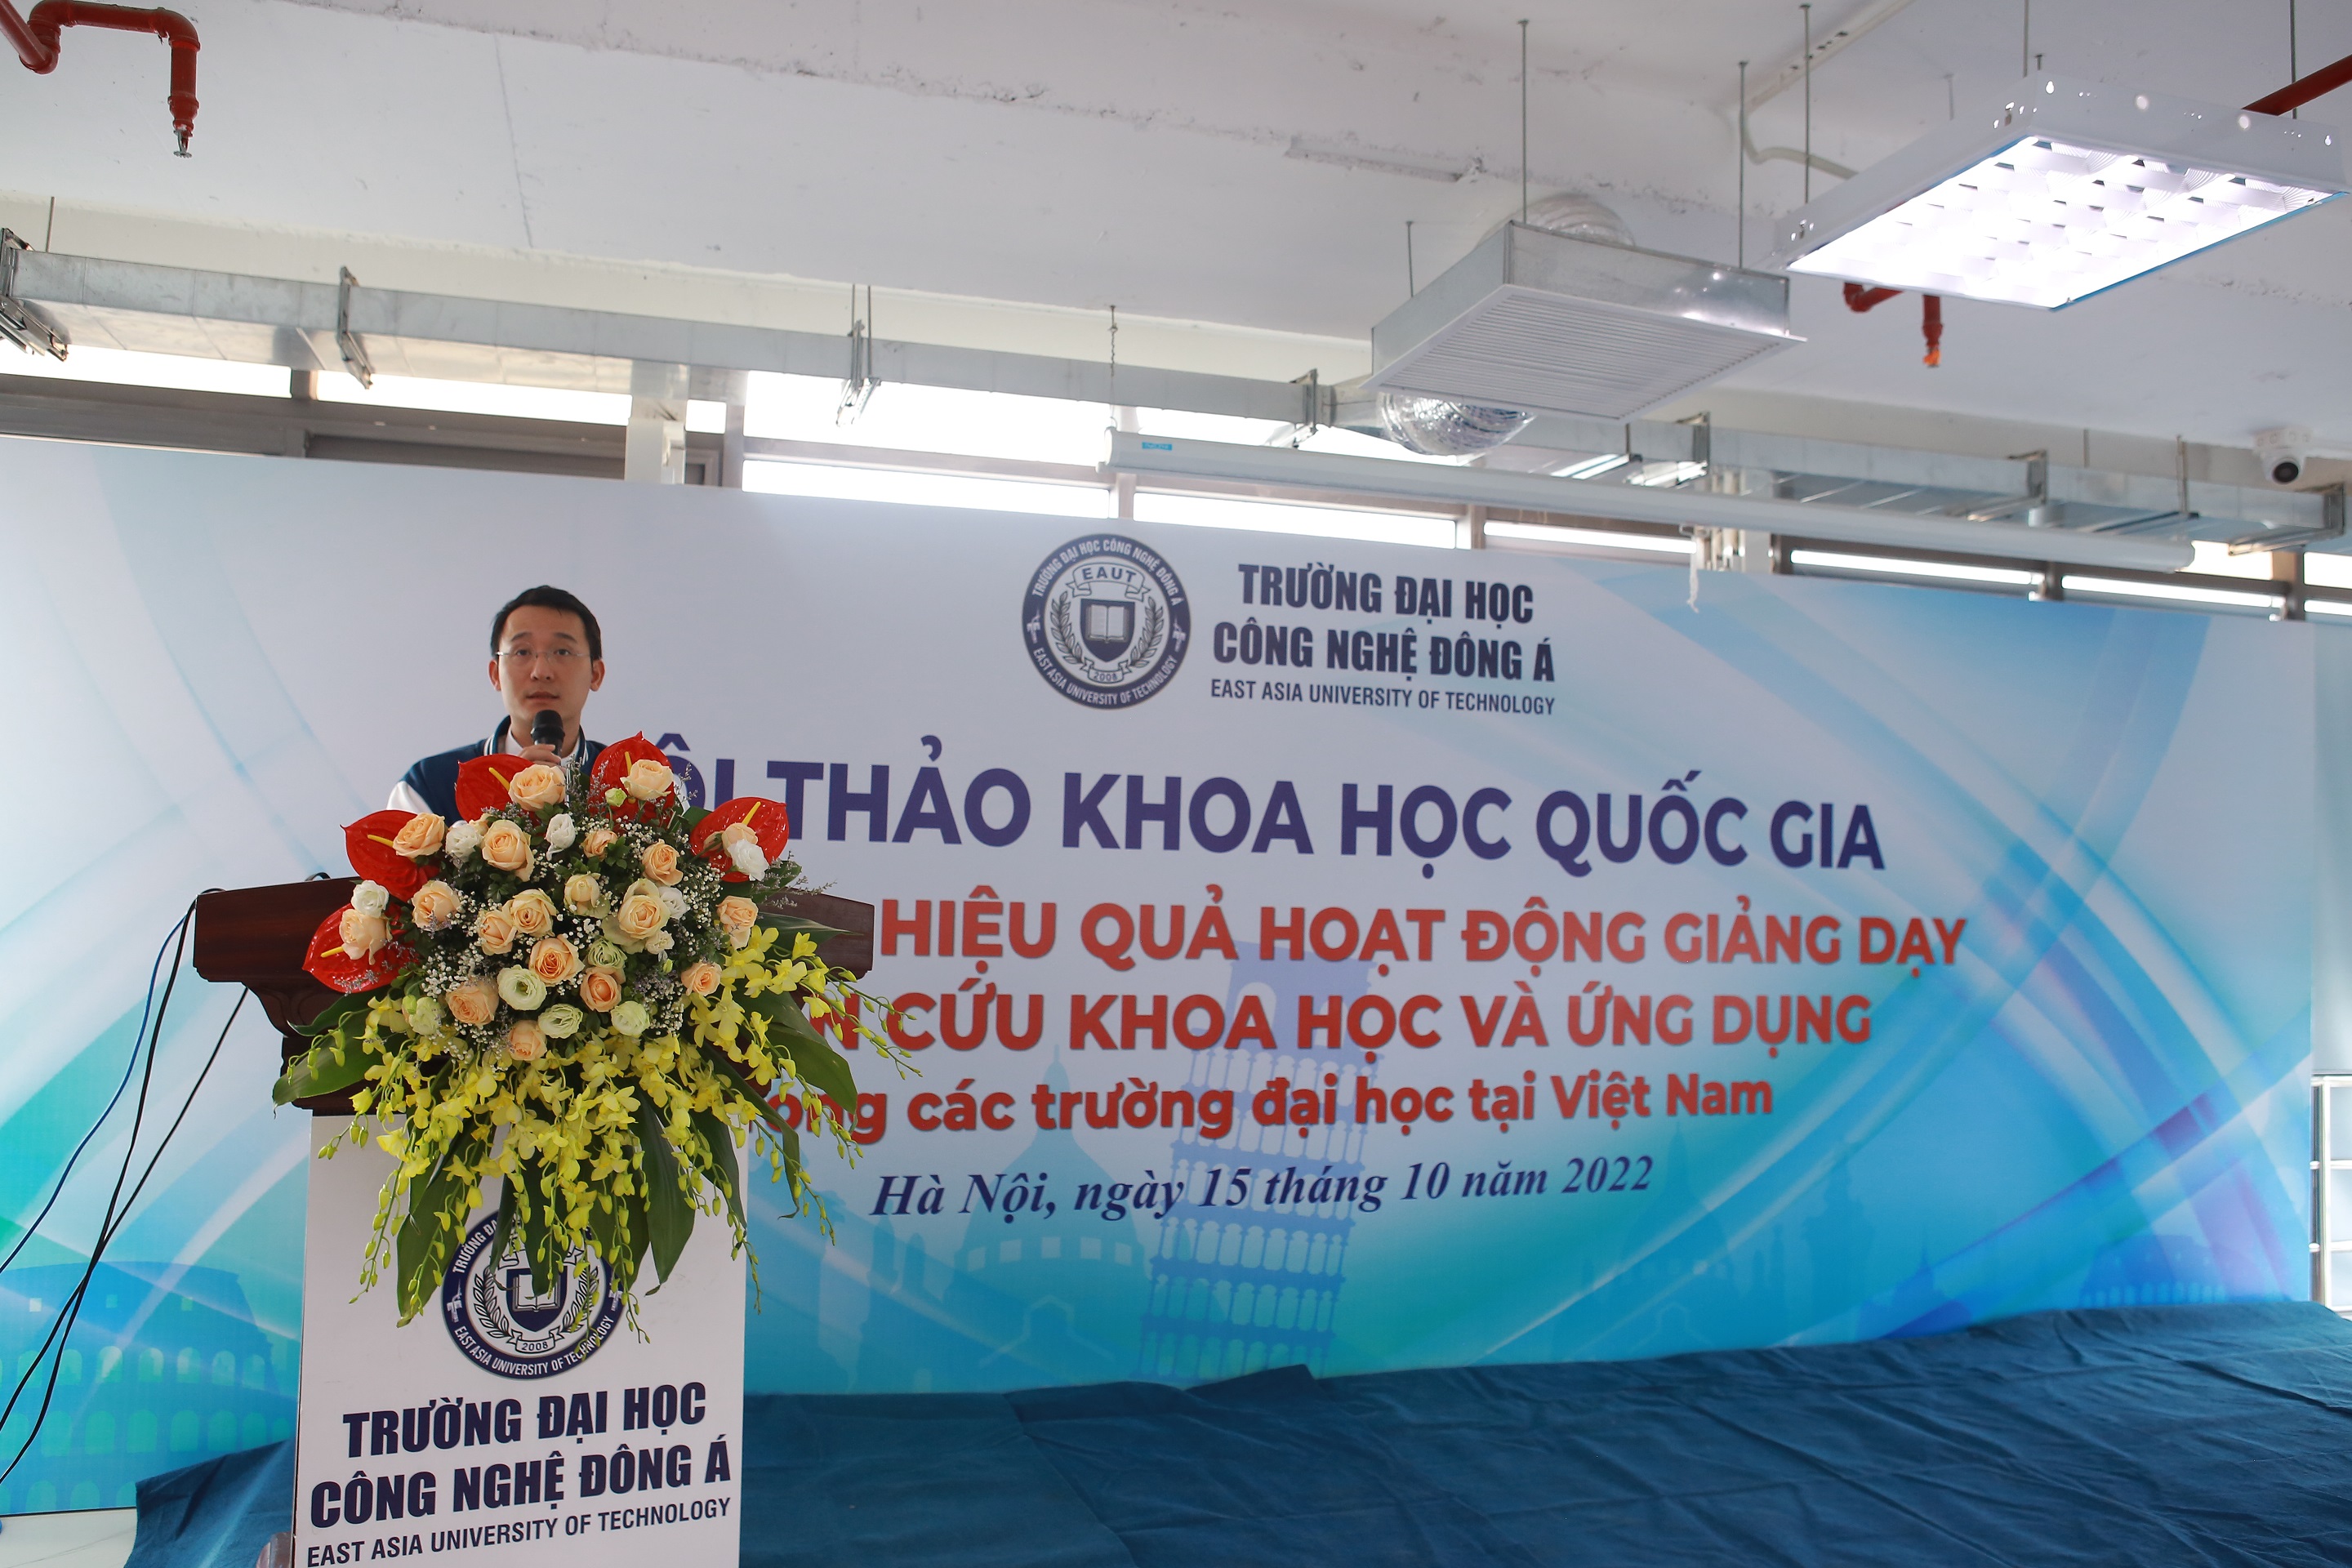 Nâng cao hiệu quả hoạt động giảng dạy, nghiên cứu khoa học và ứng dụng trong các trường đại học tại Việt Nam